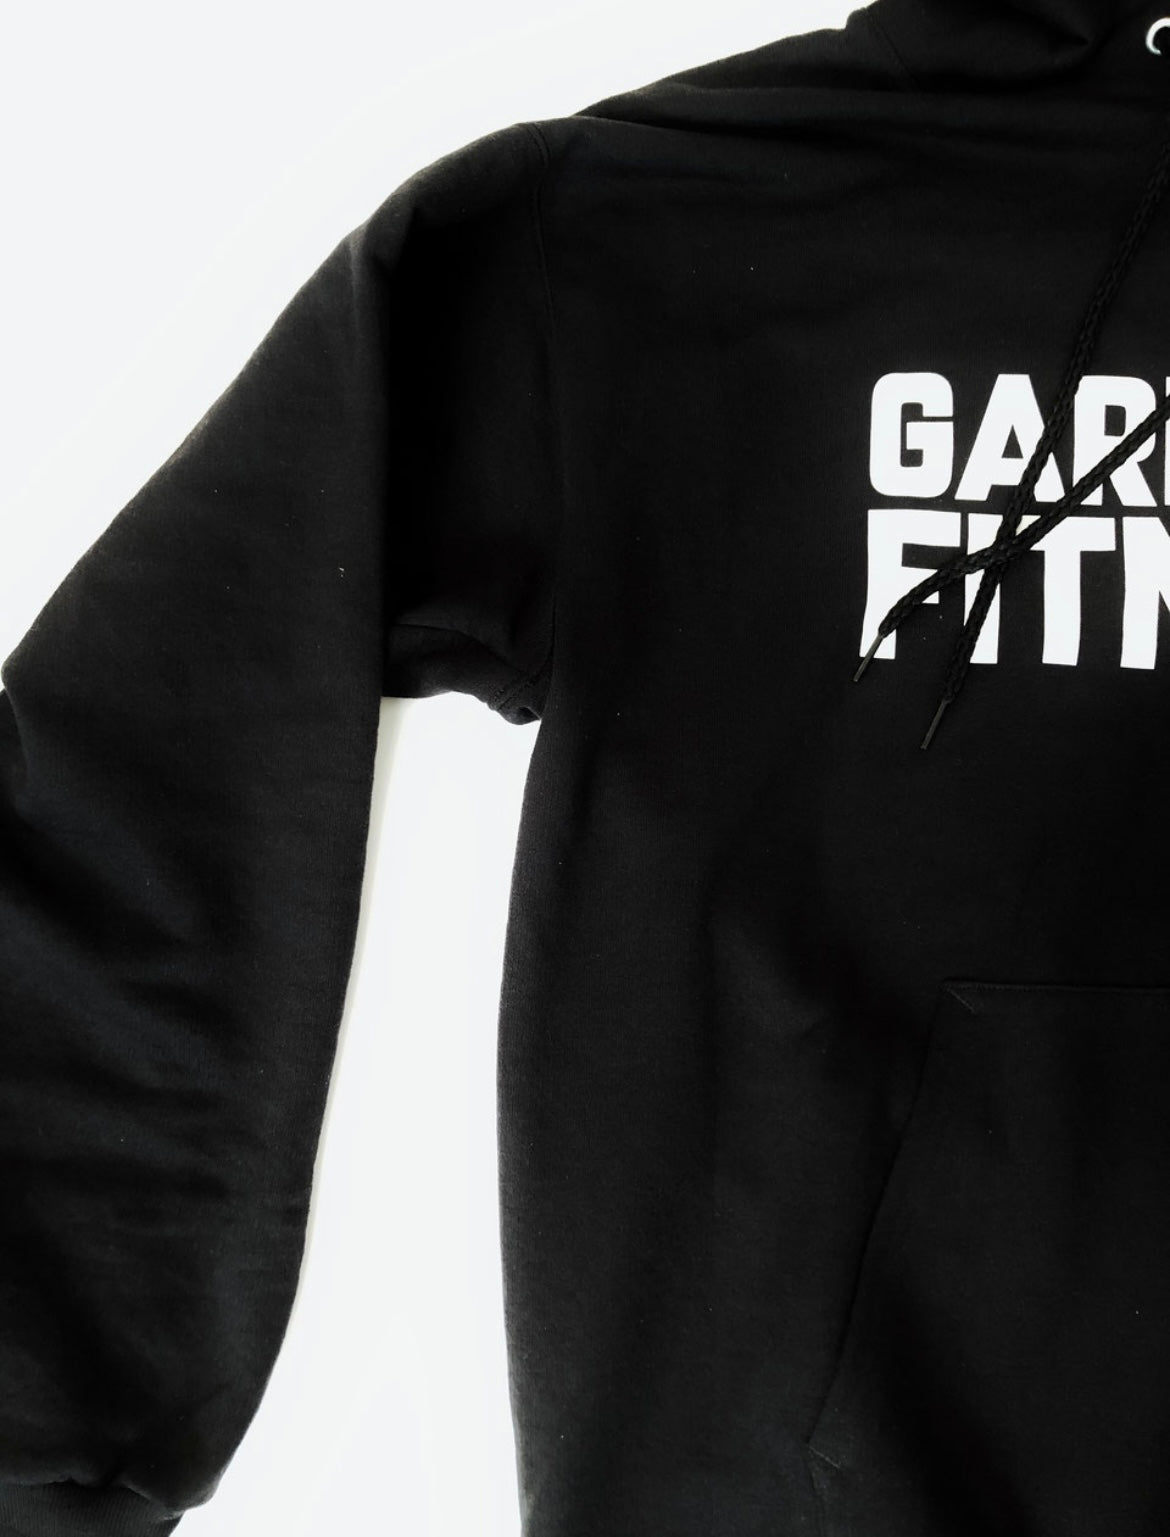 Garbear Fitness - Women's Hoodie | Series 1 - Black